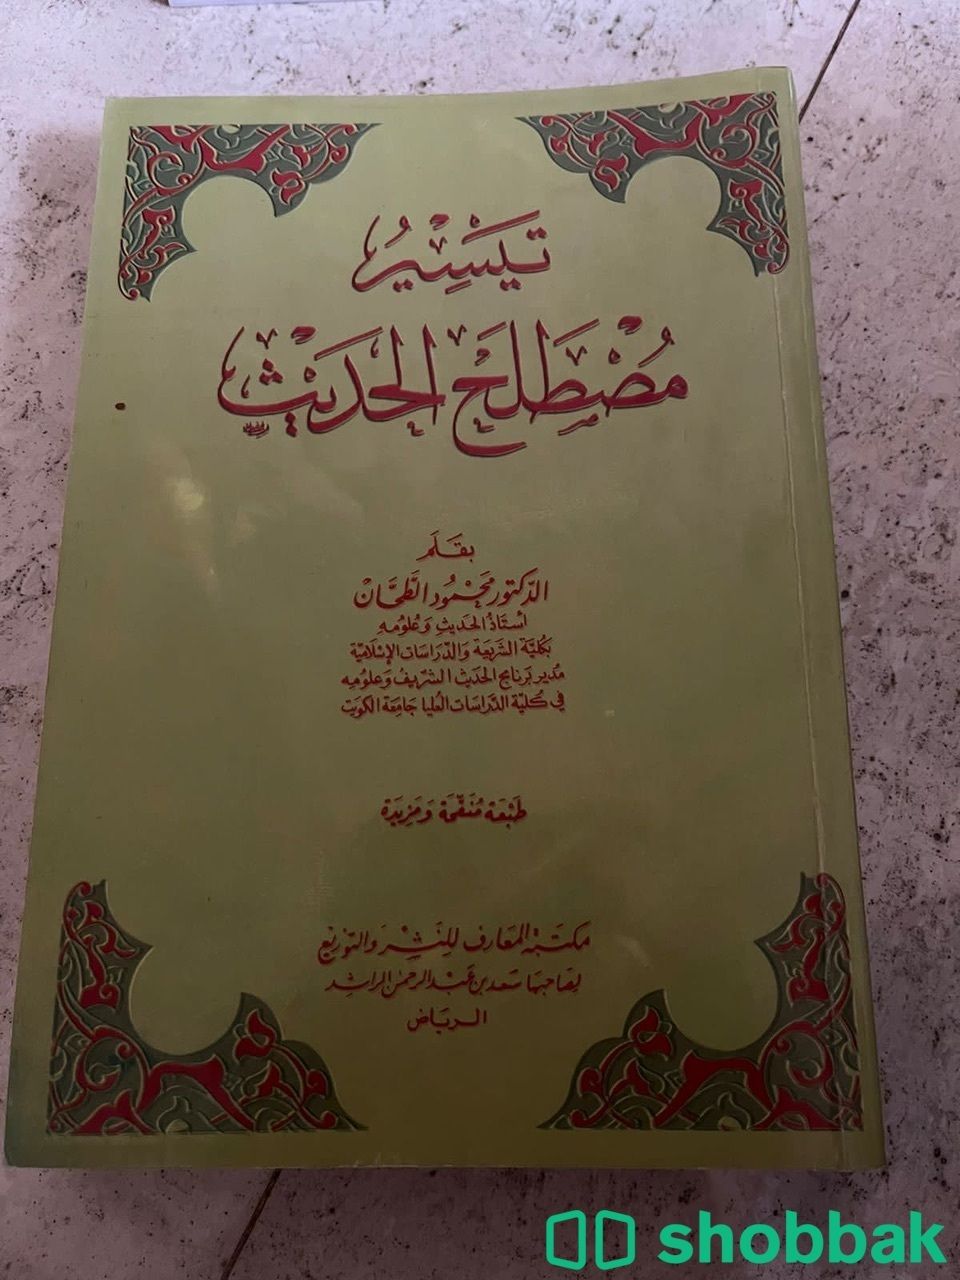 كتب دينية و اكاديمية  شباك السعودية